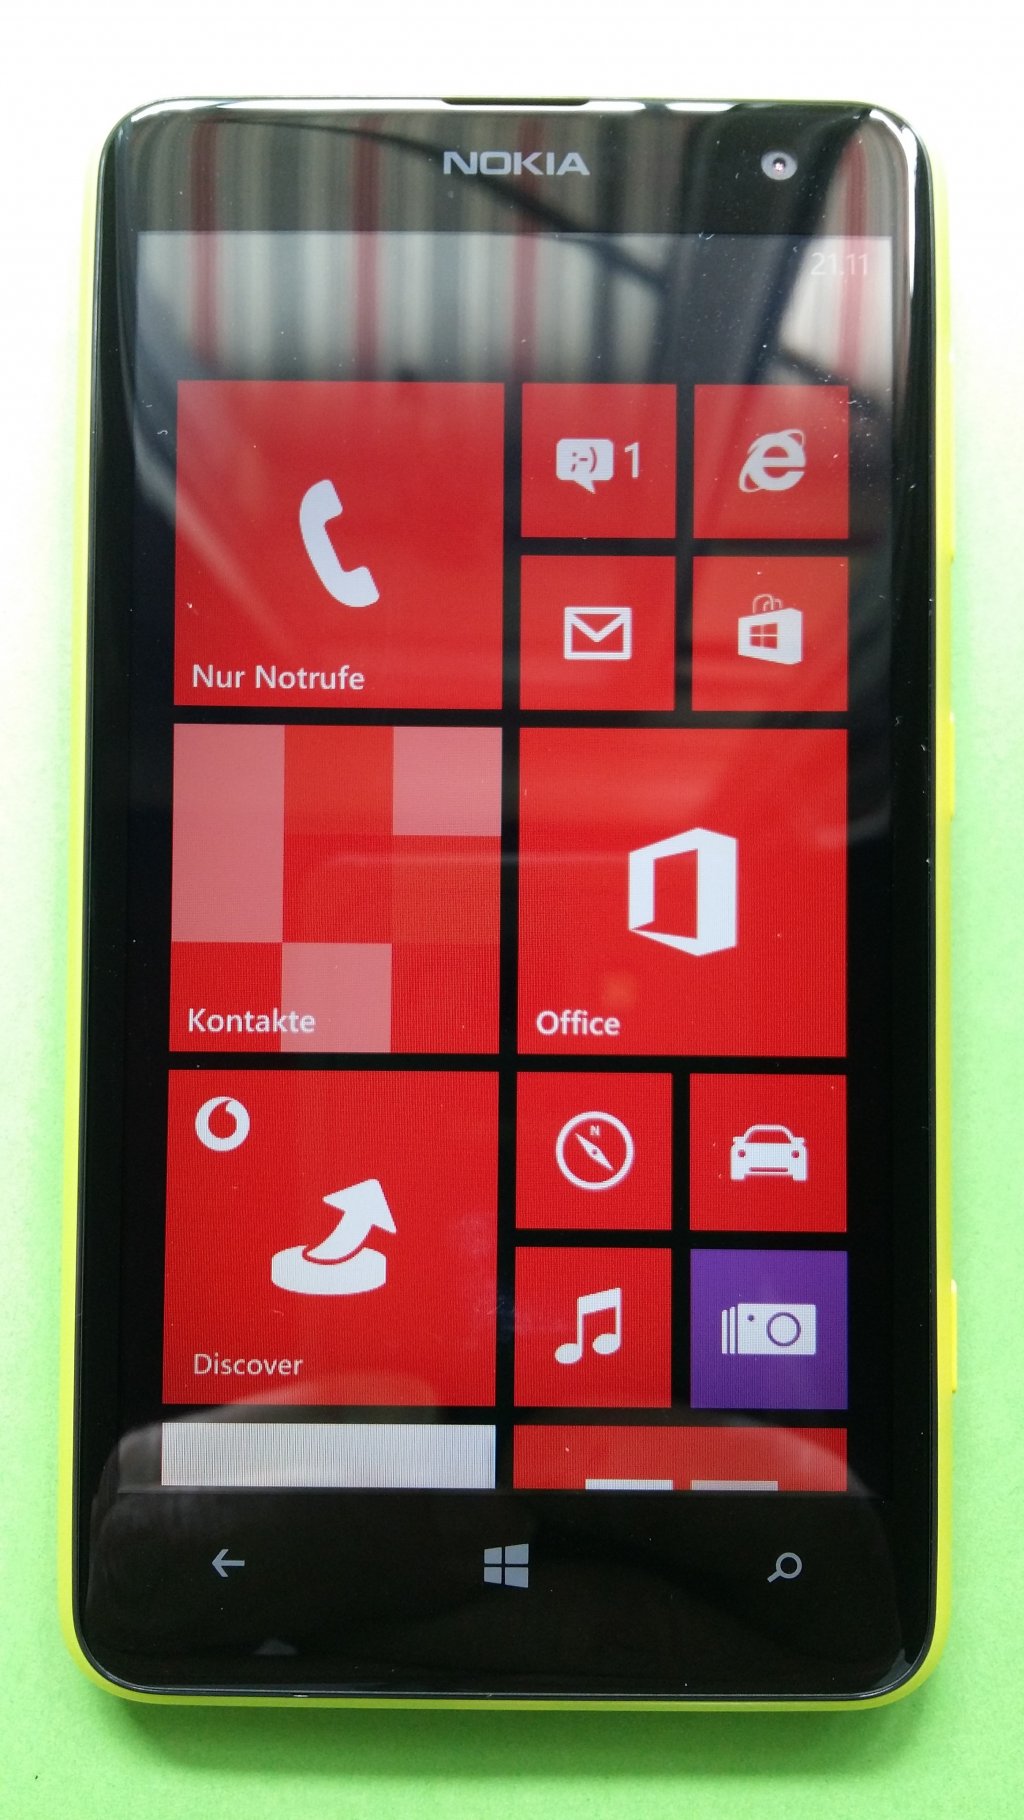 image-8337122-Nokia_625_Lumia_(1)1.w640.jpg